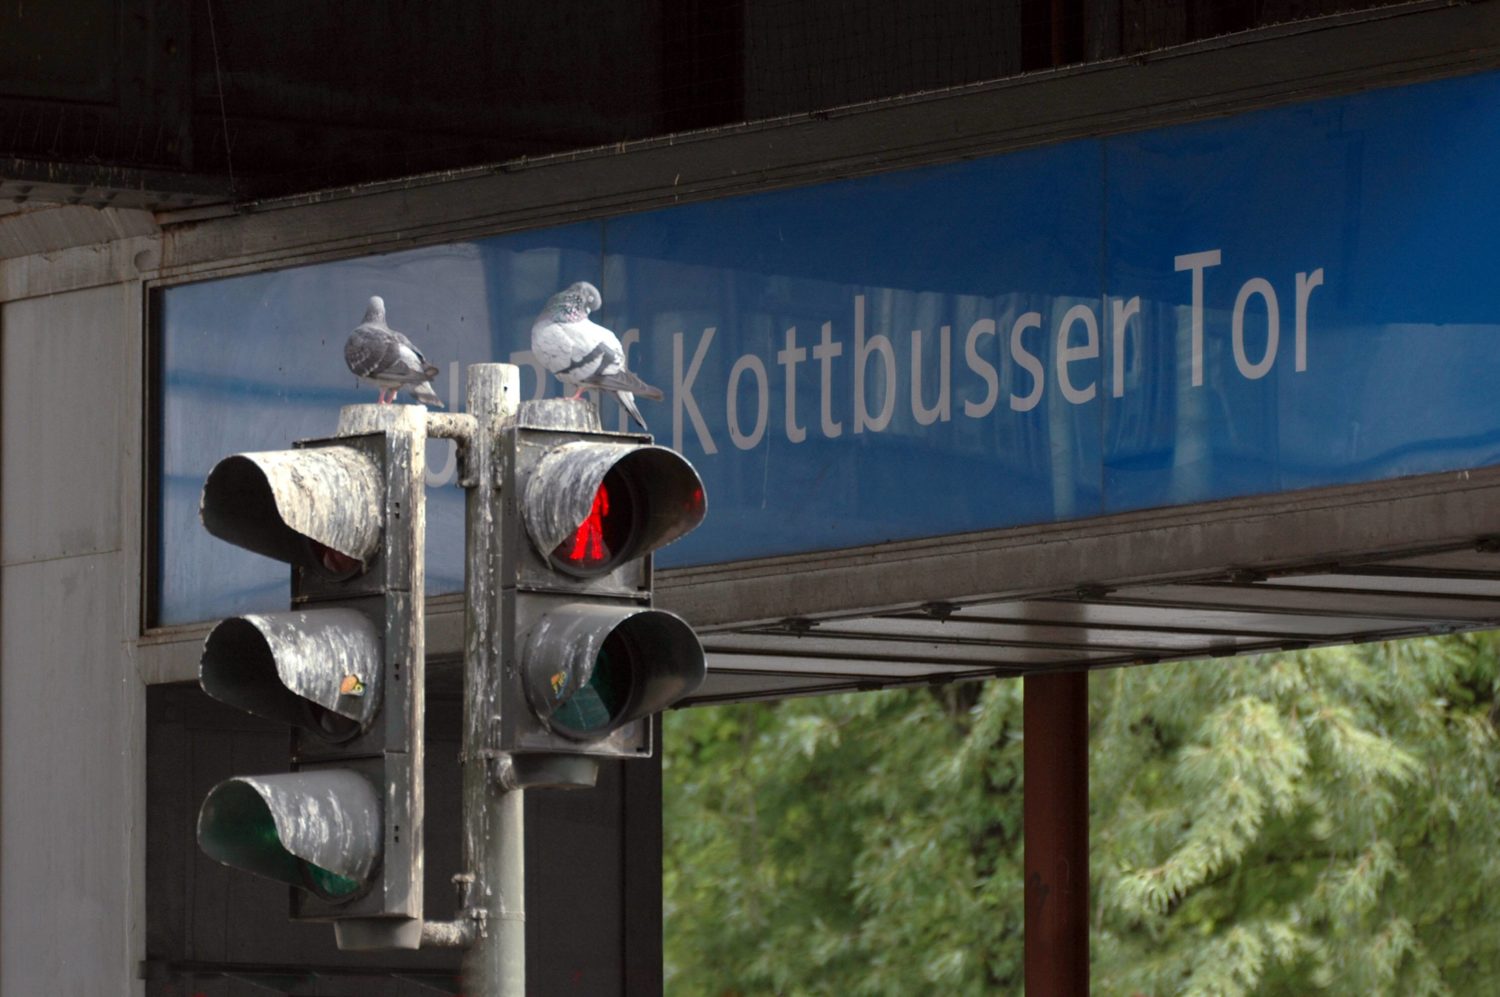 Zugezogene Berlin: Der Kotti ist auf seine ganz eigene Art ein beschauliches Plätzchen.